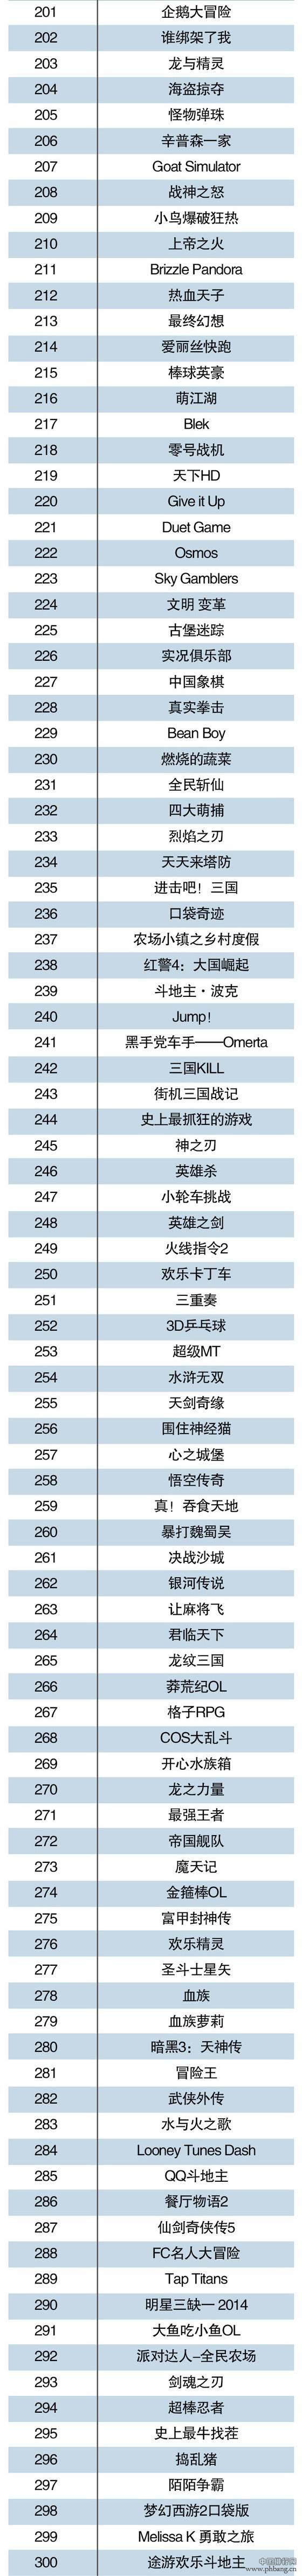 2015年1月中国手游TOP500排行榜（名单）